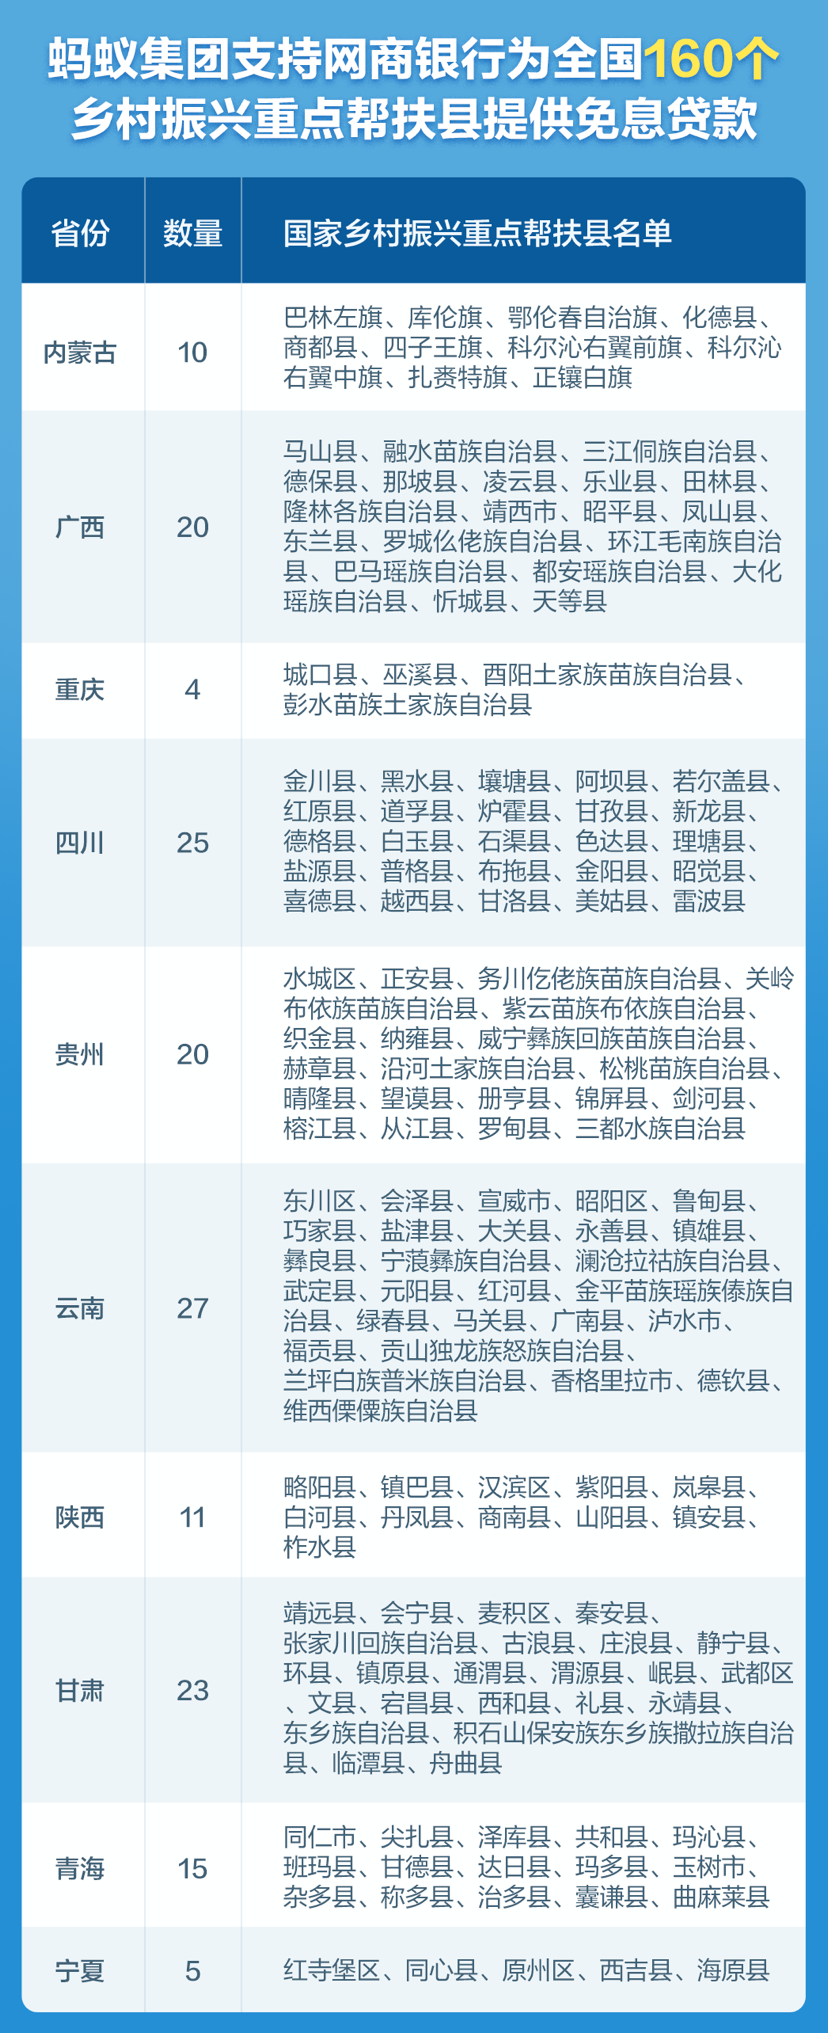 重庆4个乡村振兴重点帮扶县可获网商银行免息贷款 支付宝供图 华龙网-新重庆客户端 发